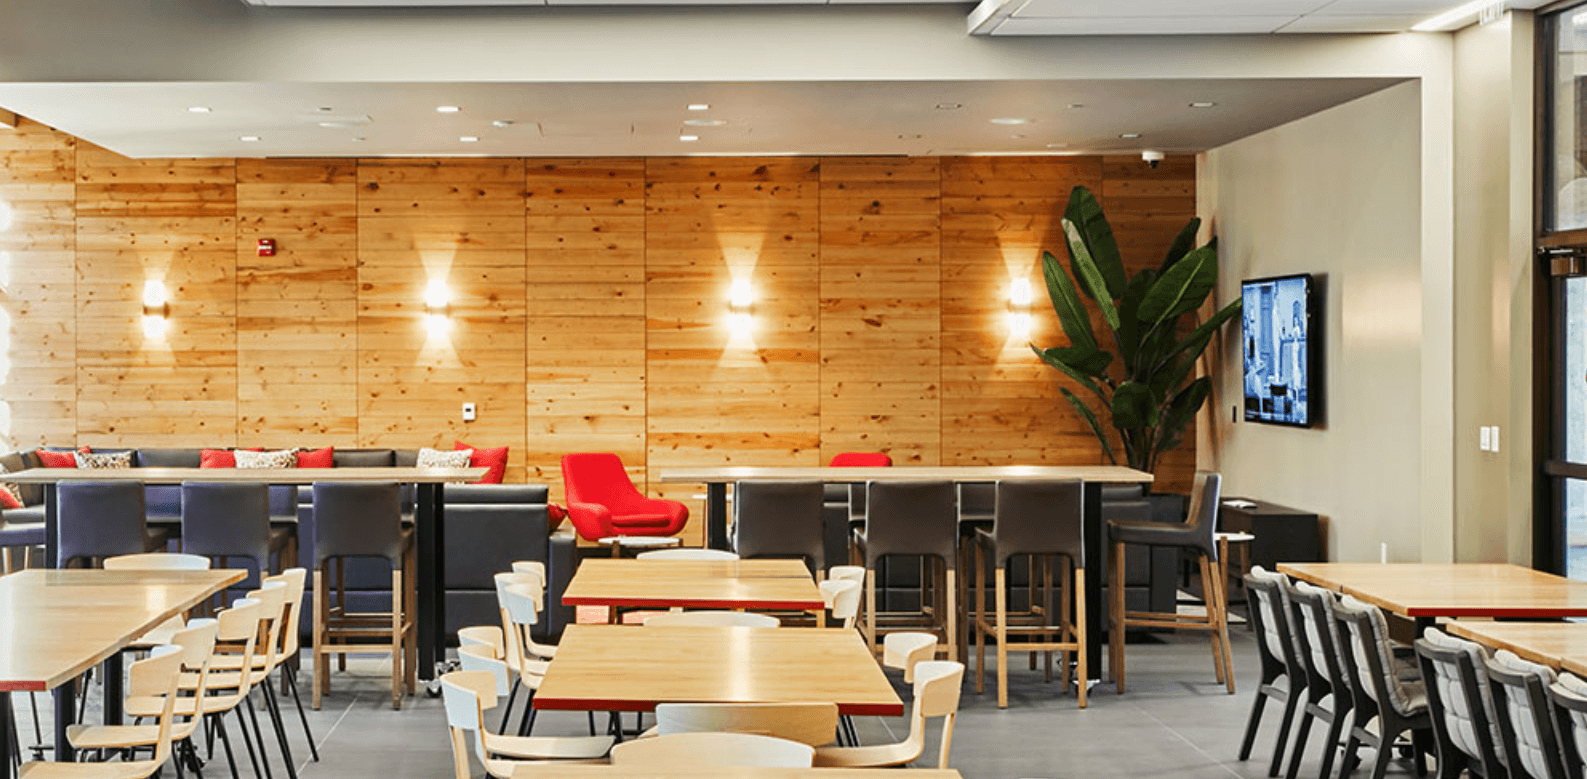 四个墙壁壁灯照亮了餐厅环境中裸露的木墙